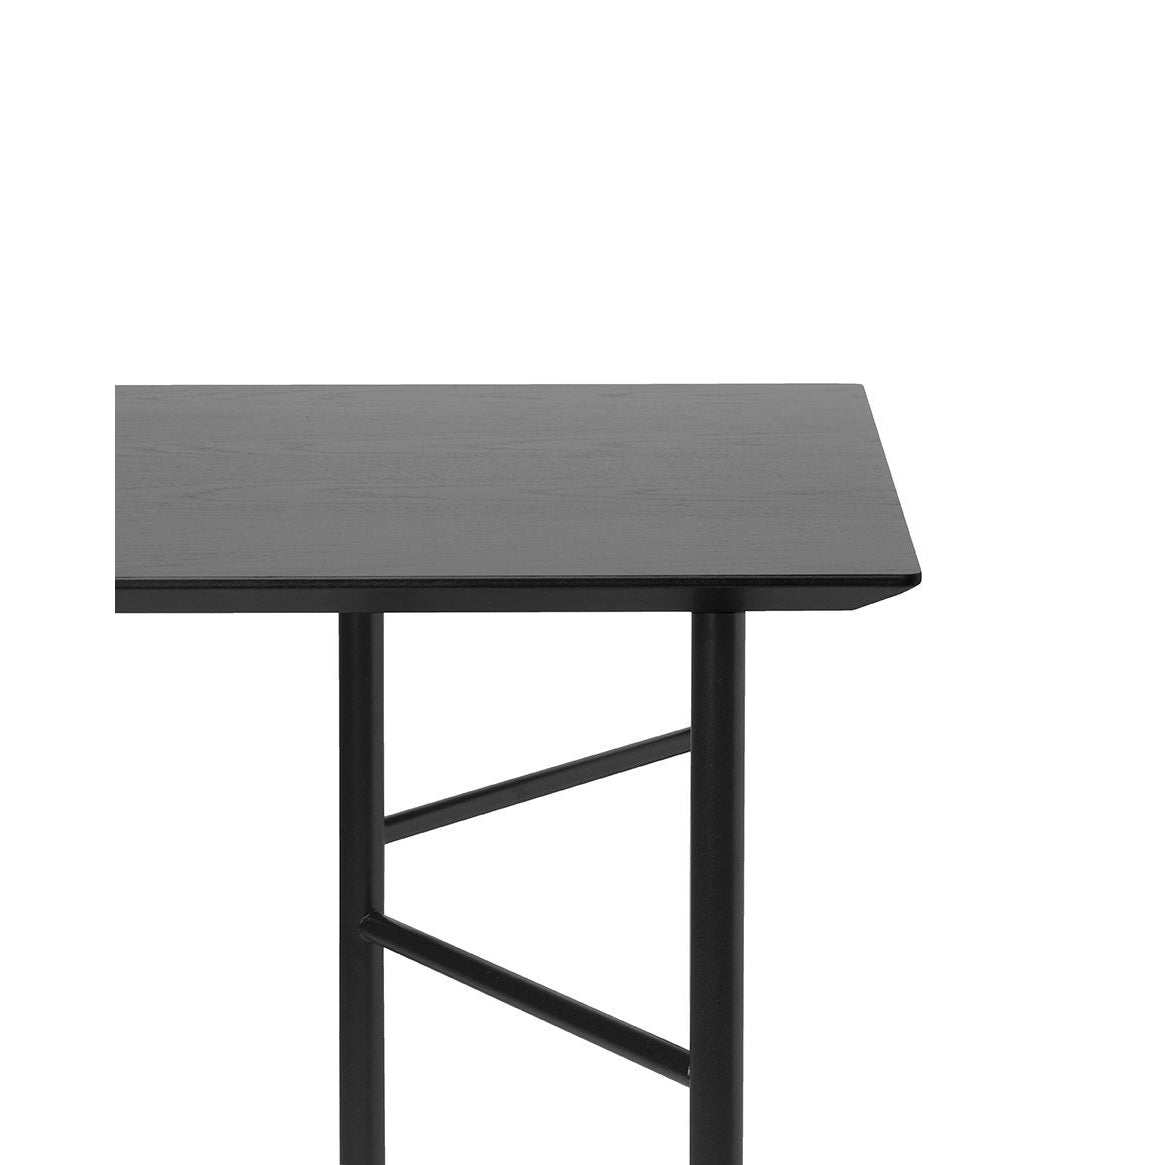 Ferm Living Mingle Desk Top 135 cm, schwarzer Eichenfurnier